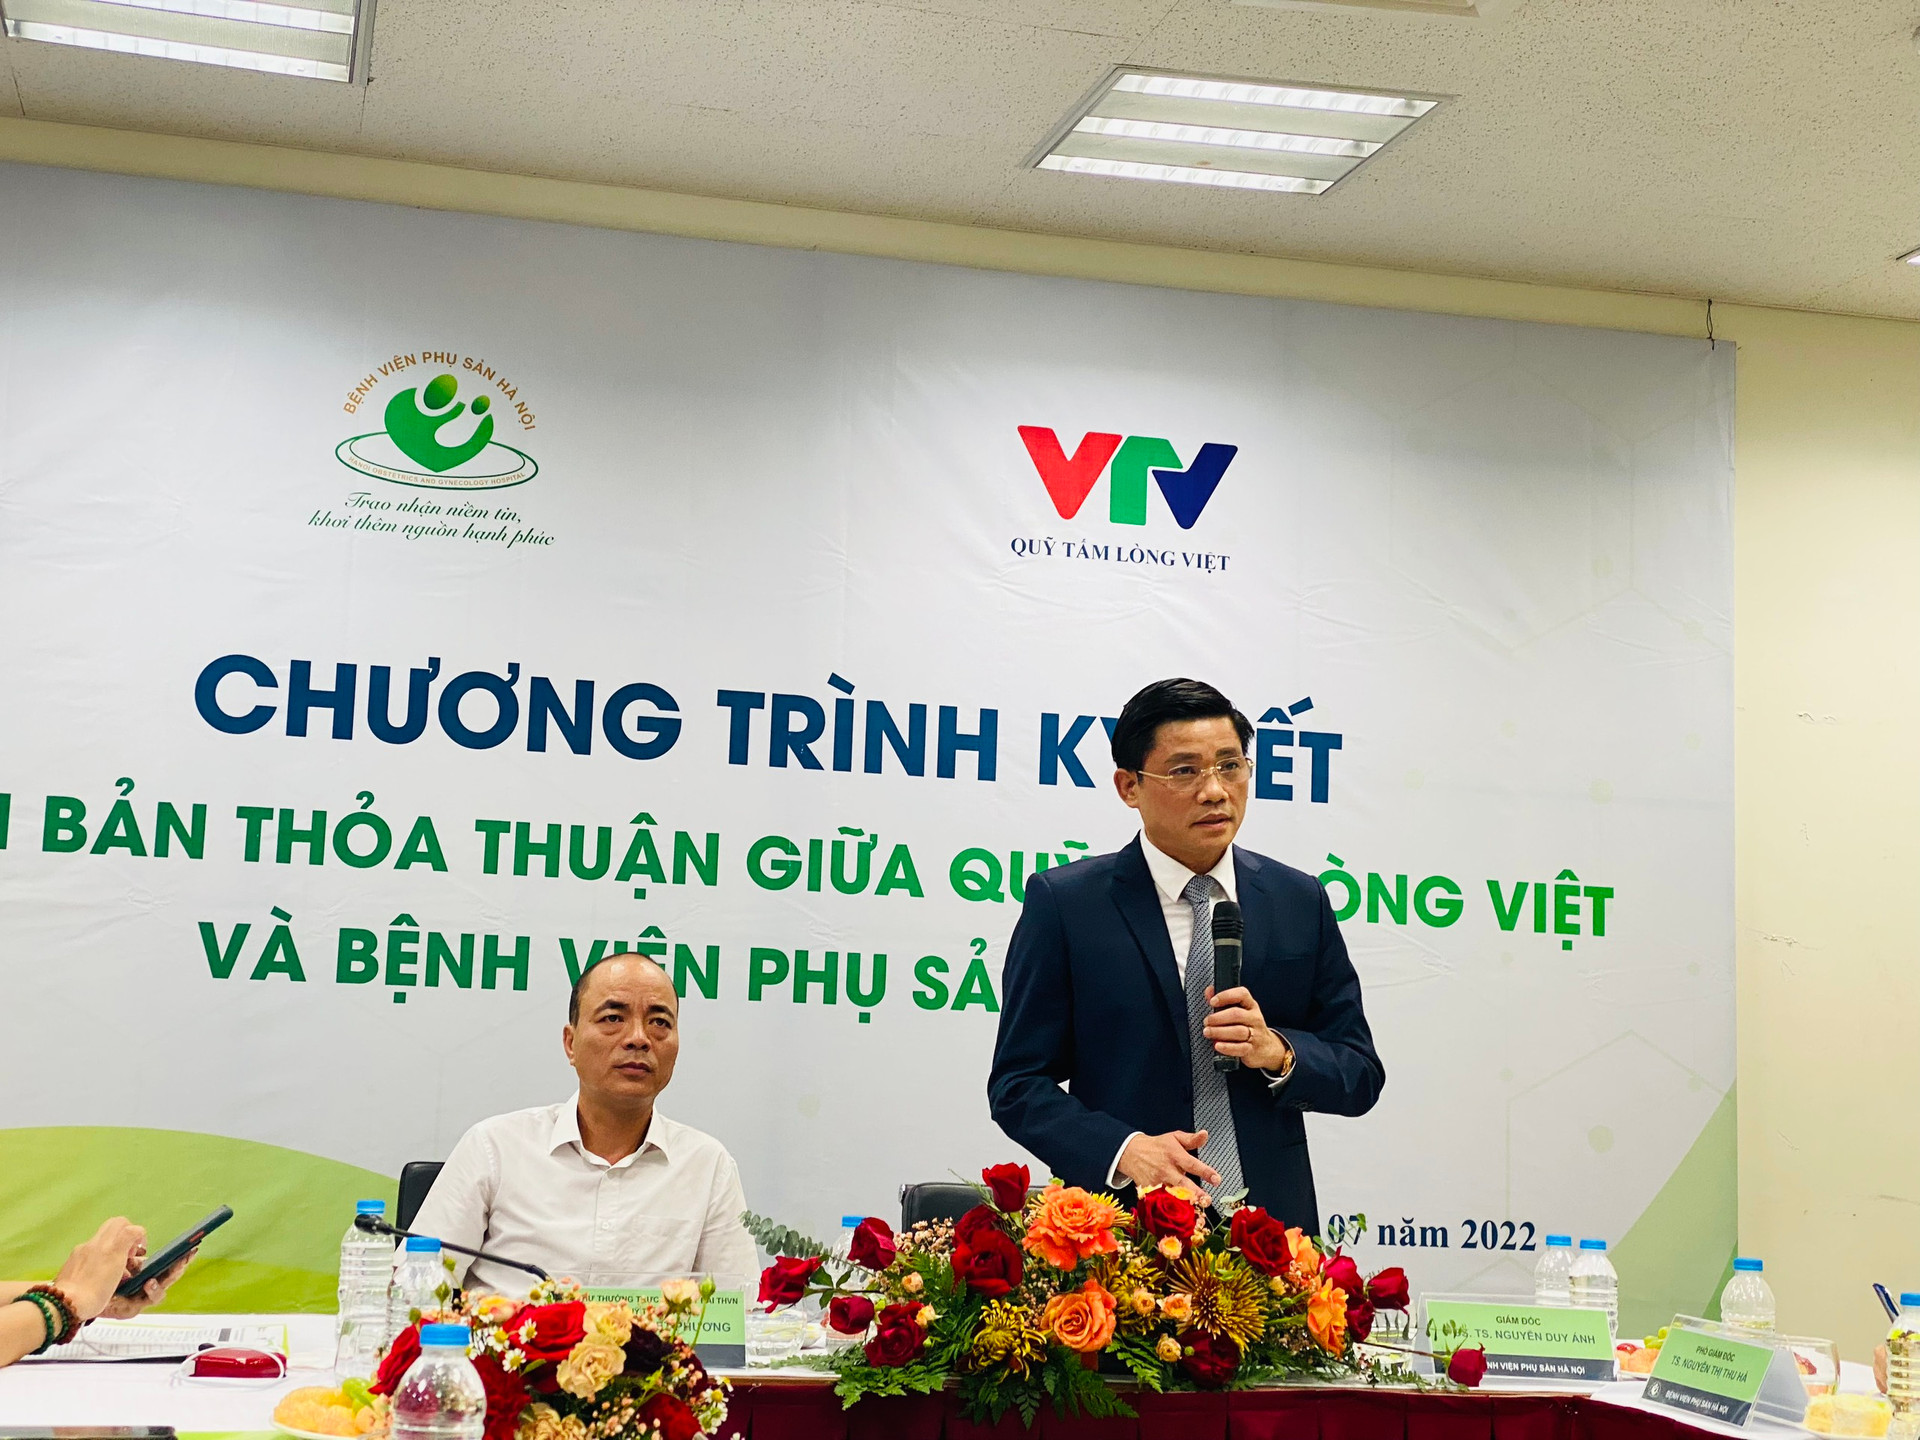 PGS. TS Nguyễn Duy Ánh, Giám đốc Bệnh viện Phụ sản HN phát biểu tại chương trình.